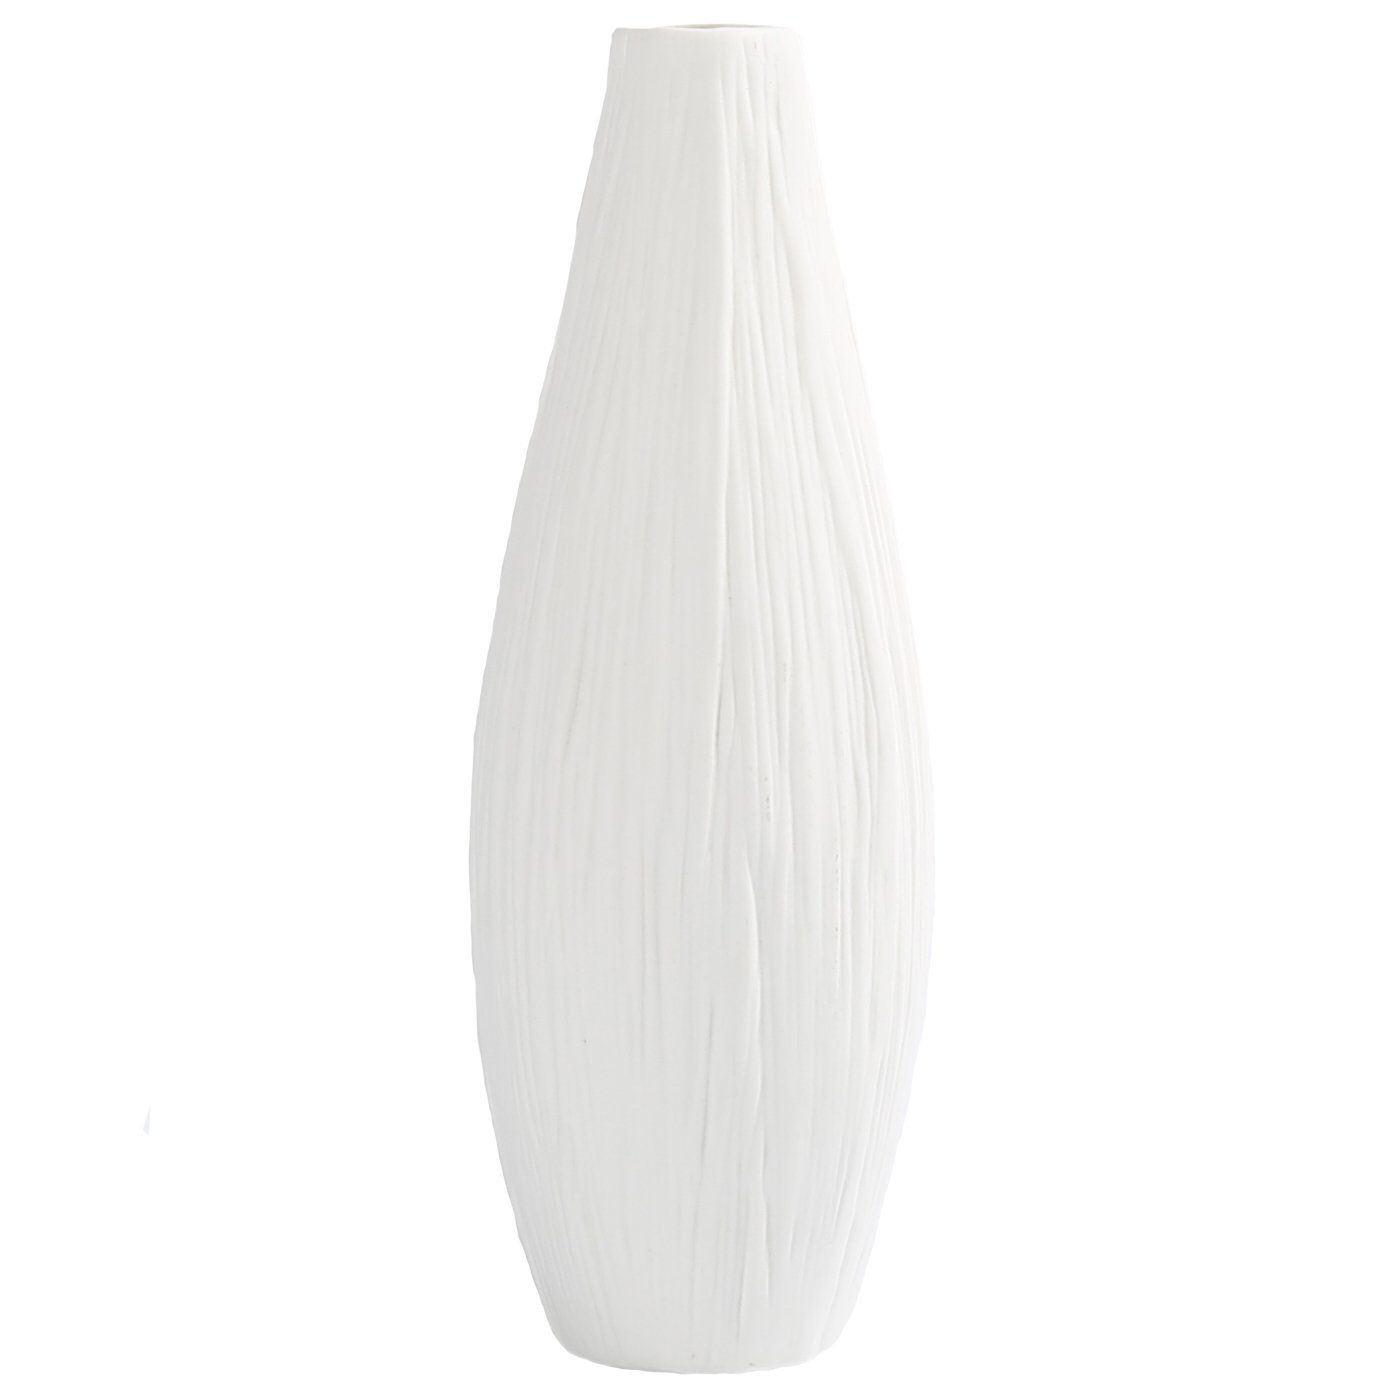 mccoy pottery flower vases of tall black vases collection d vine dev 10 pure white ceramic flower pertaining to d vine dev 10 pure white ceramic flower vase tall oval